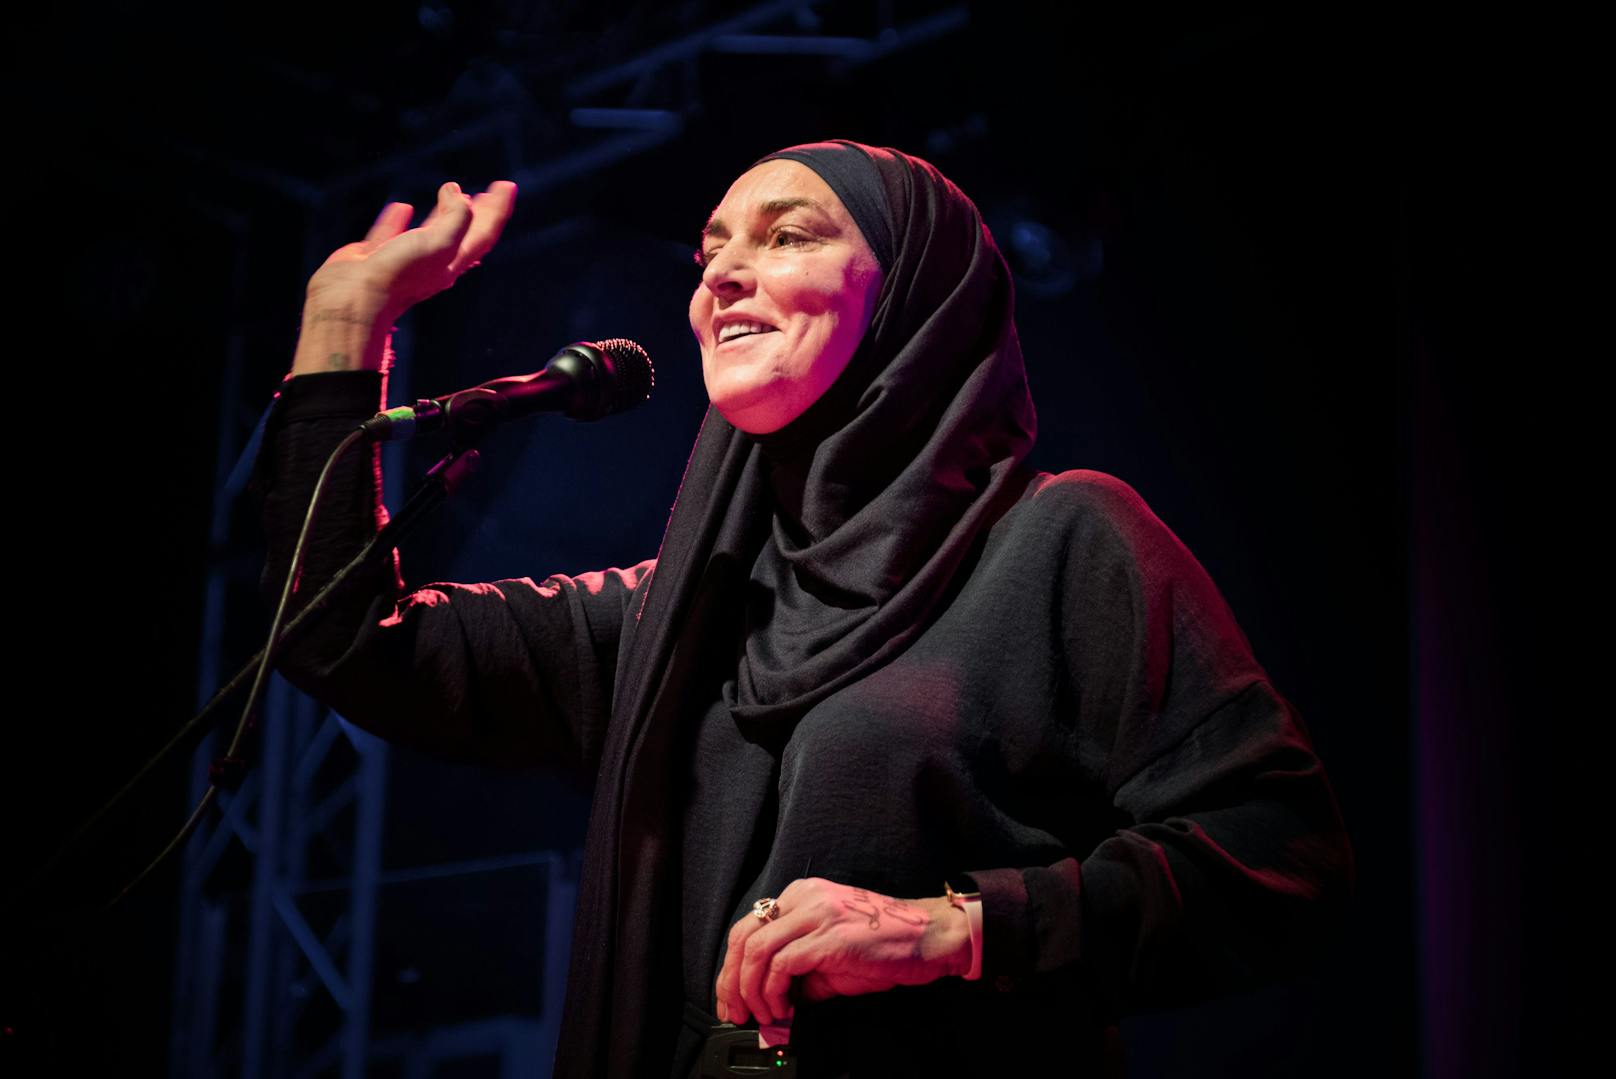 2018 konvertierte die Sängerin zum Islam.